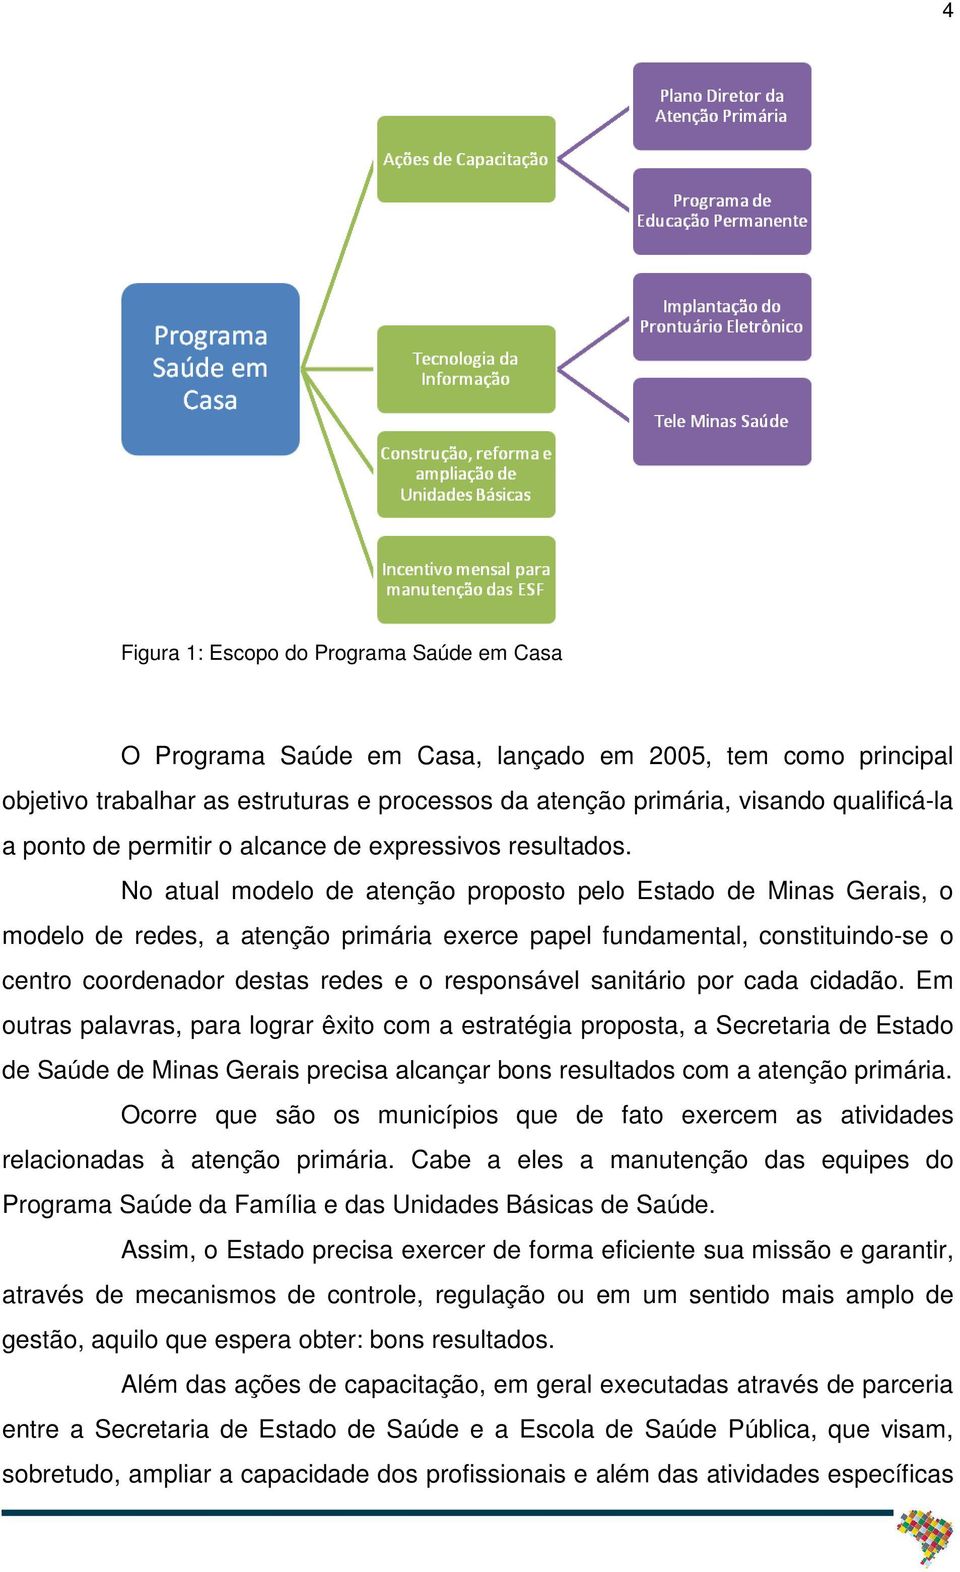 No atual modelo de atenção proposto pelo Estado de Minas Gerais, o modelo de redes, a atenção primária exerce papel fundamental, constituindo-se o centro coordenador destas redes e o responsável